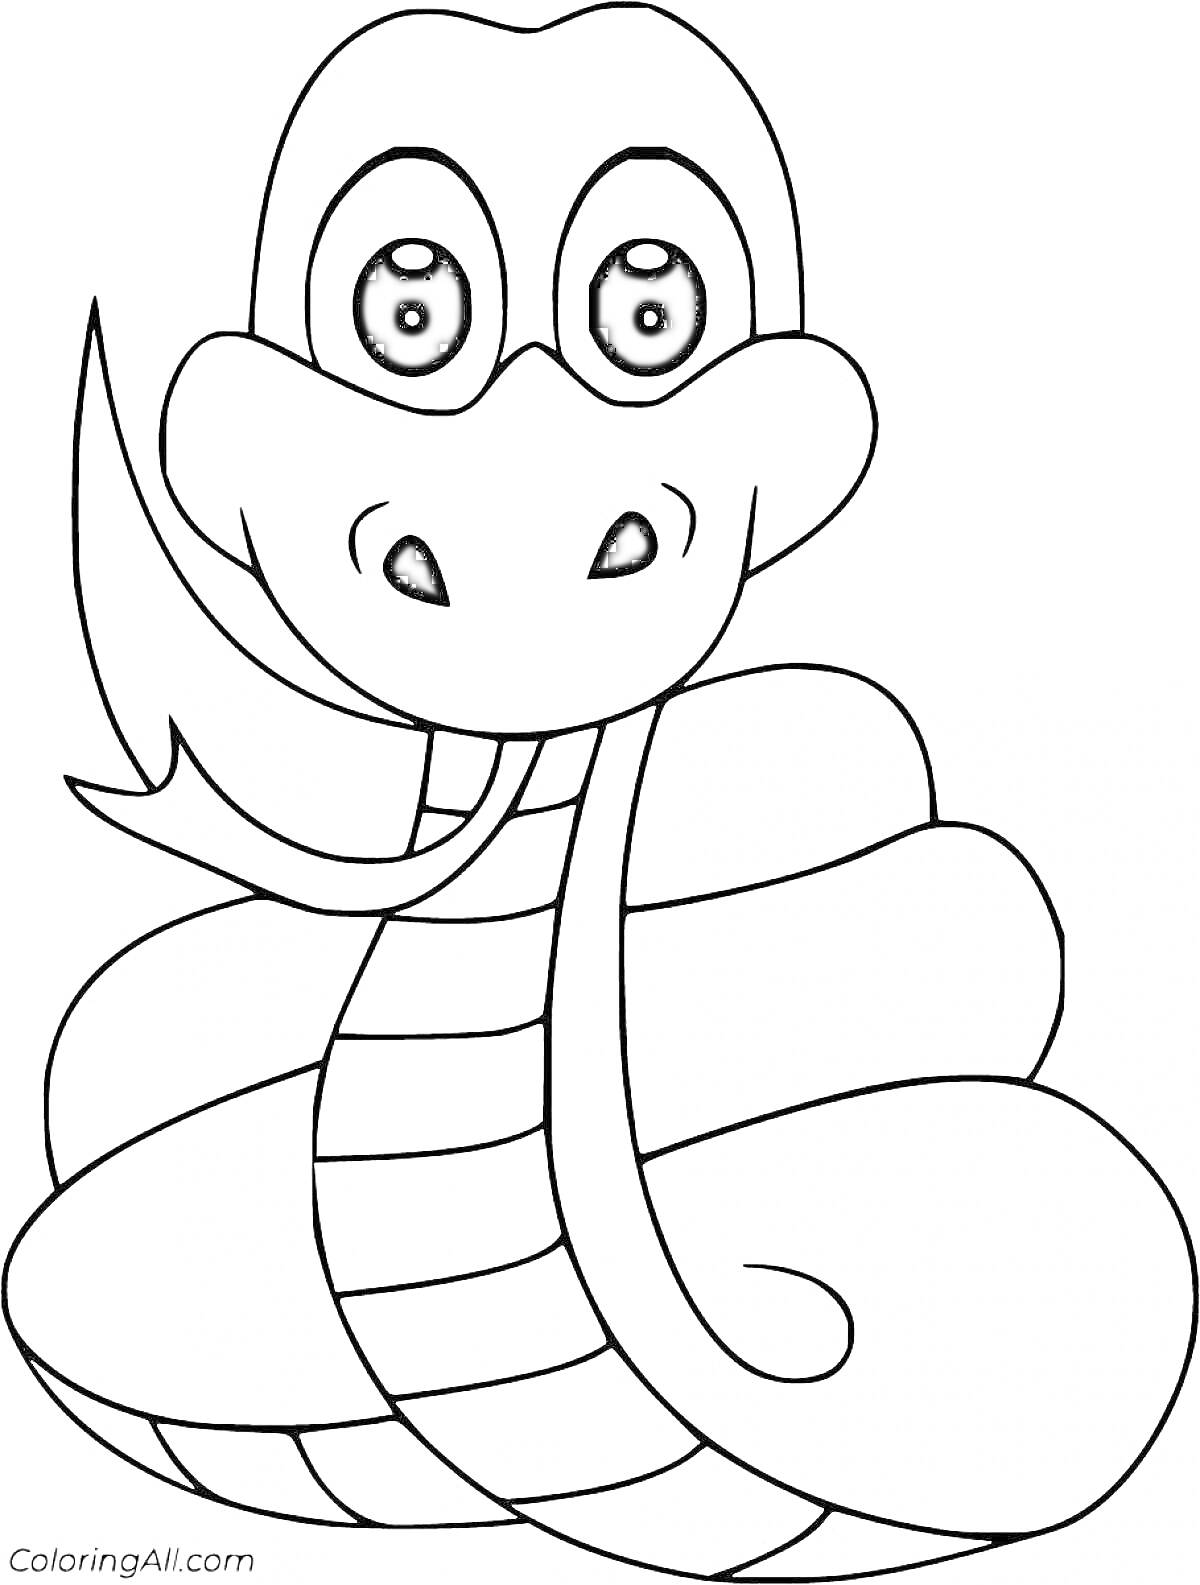 Раскраска Змея с большими глазами, улыбается и скручена несколькими петлями